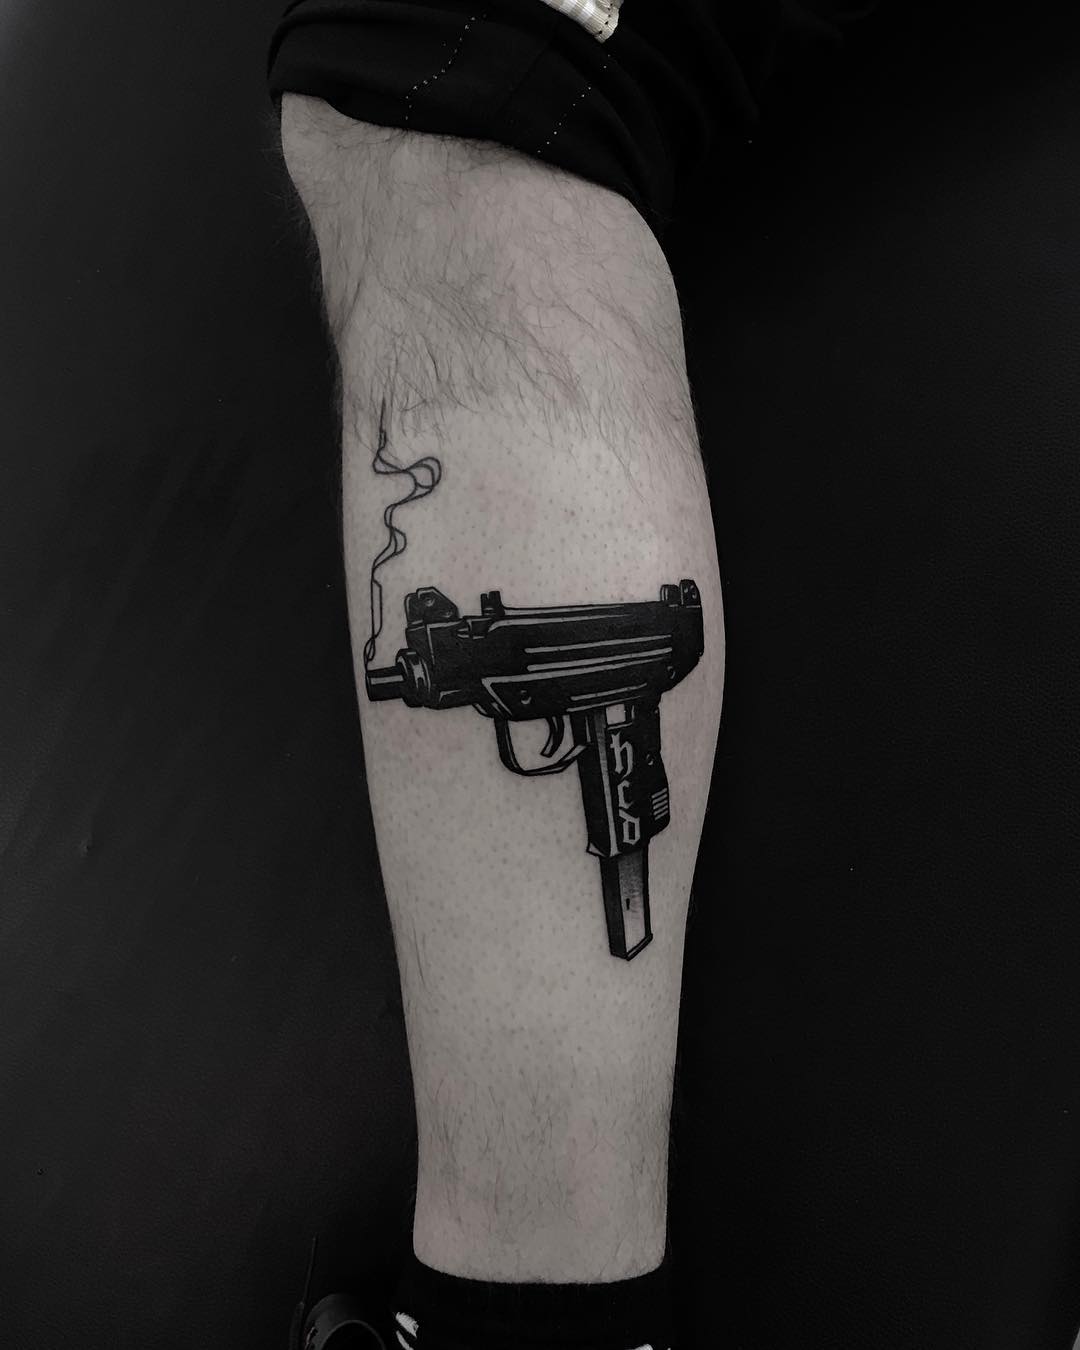 Uzi tattoo by Krzysztof Szeszko